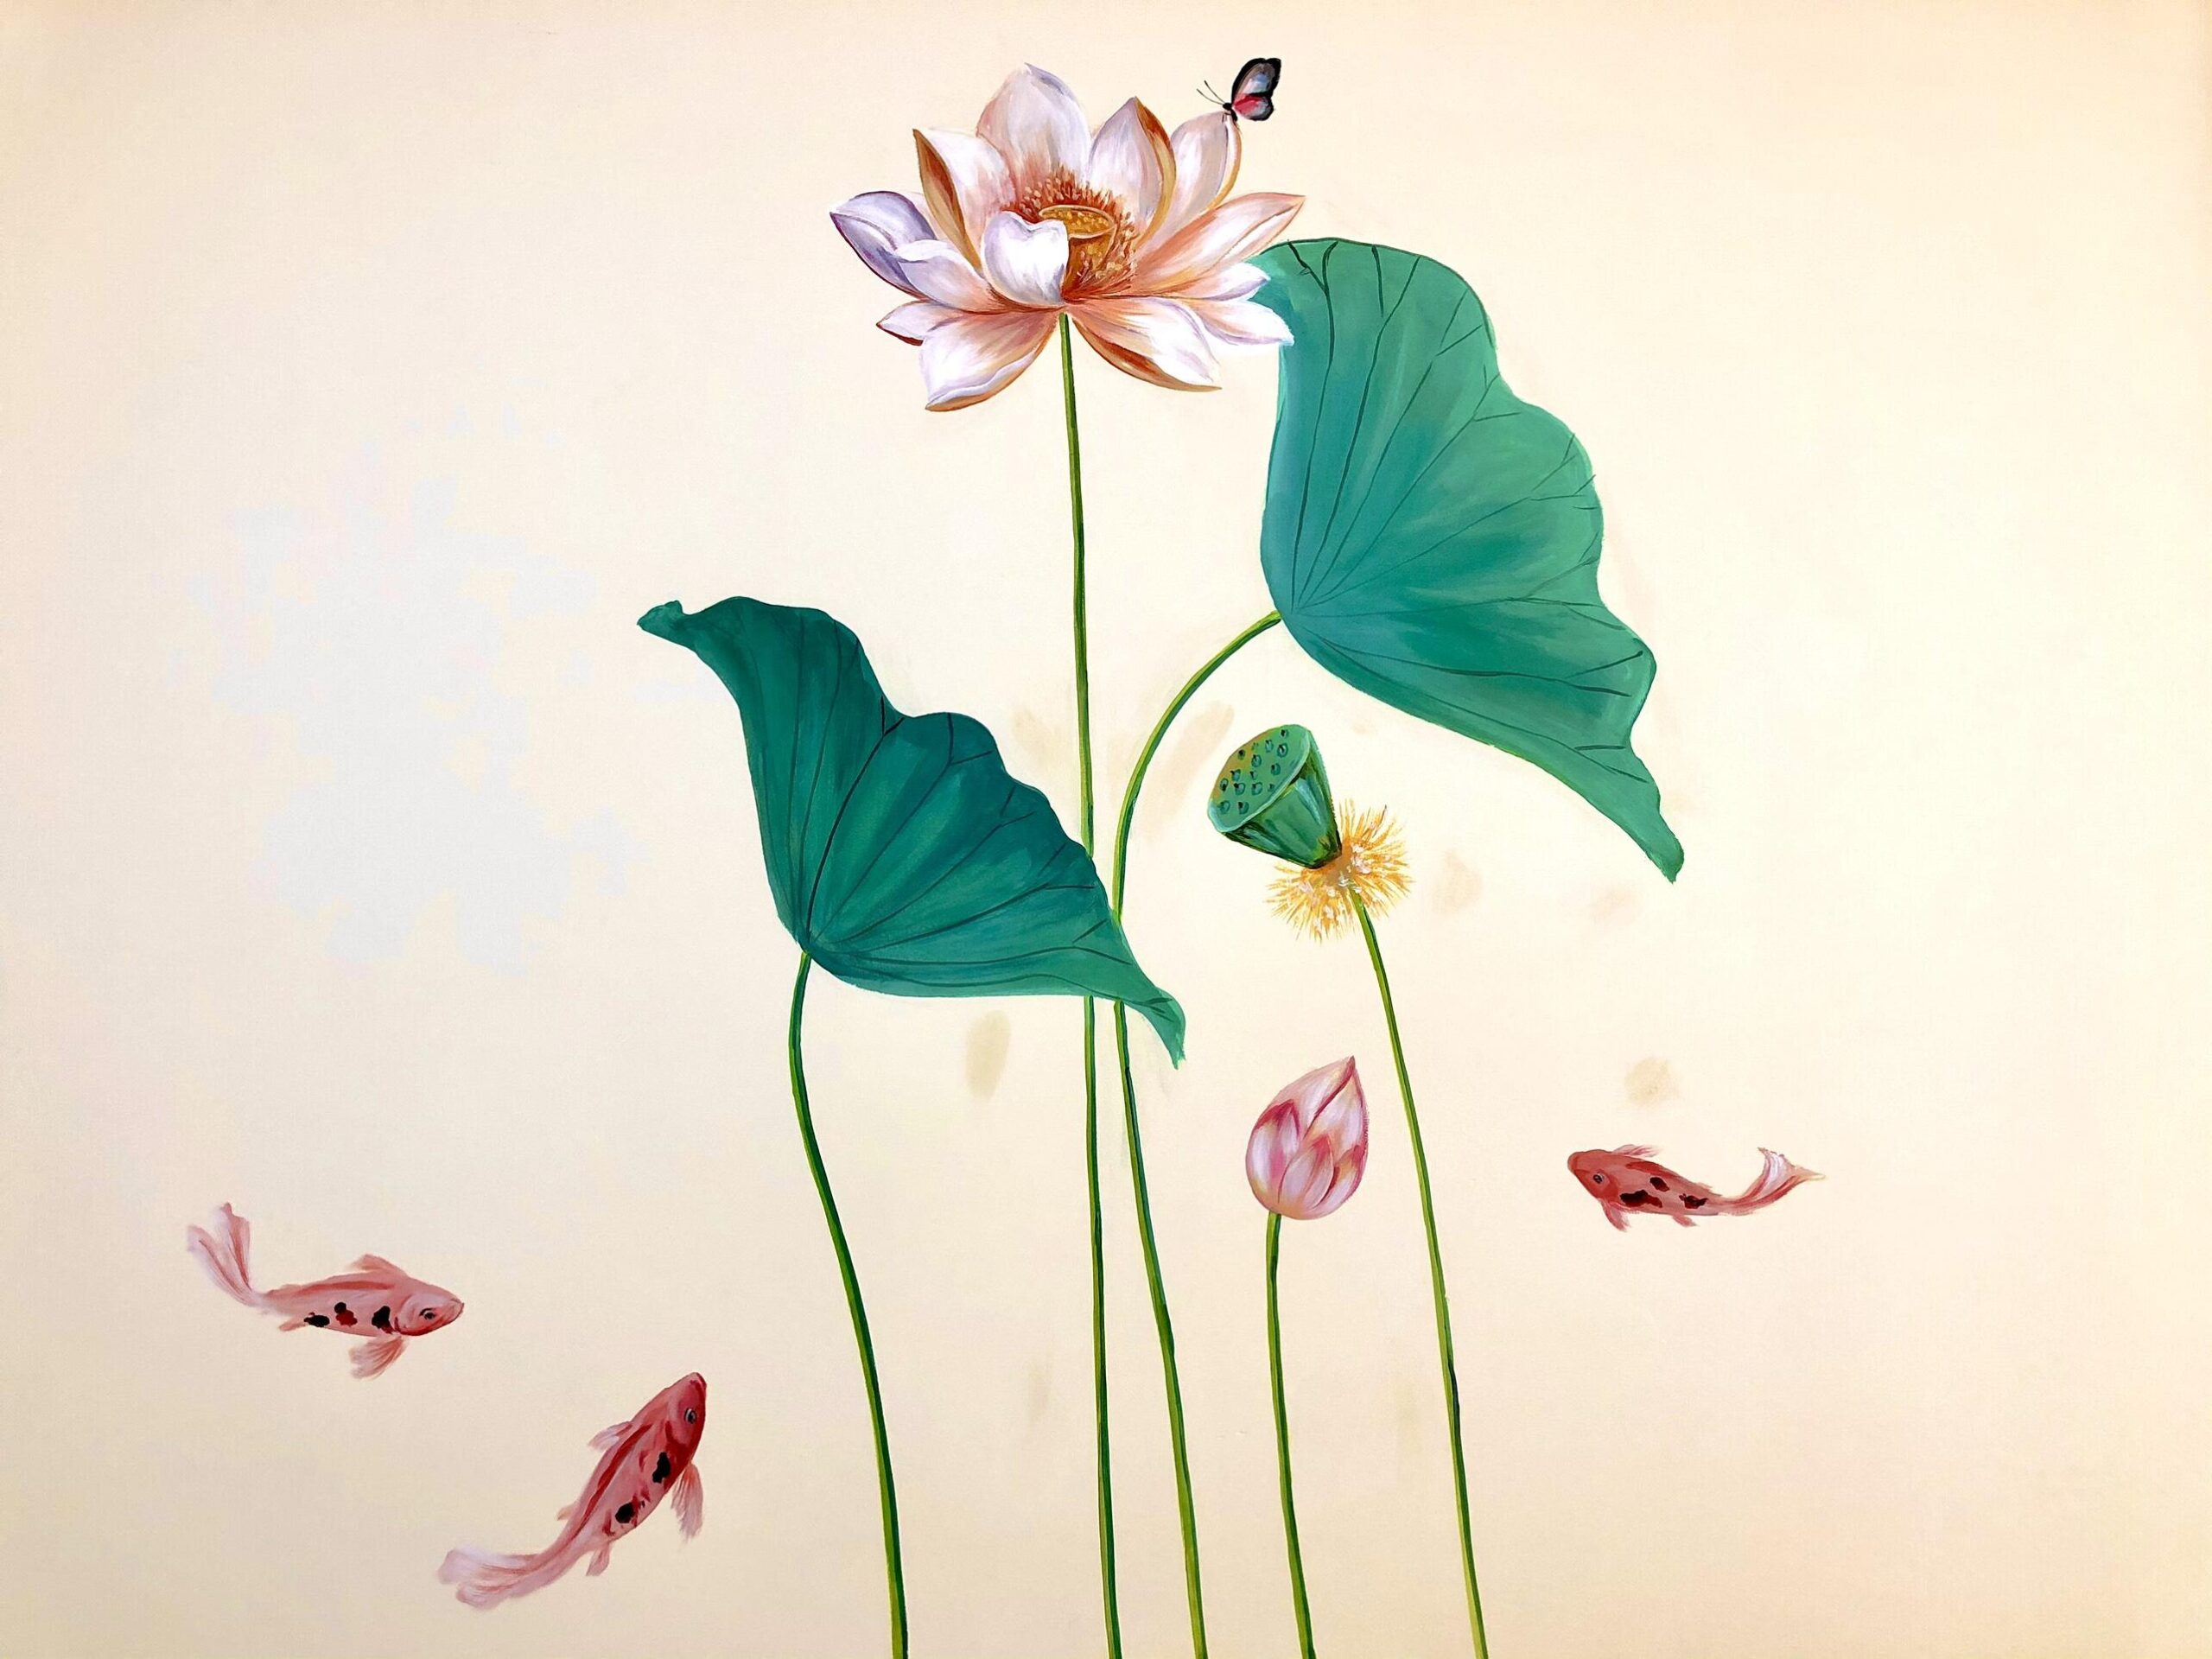 99 mẫu tranh hoa sen phong thủy đẹp nhất thế giới 2020  Tranh Sơn Dầu  Phương Nguyên